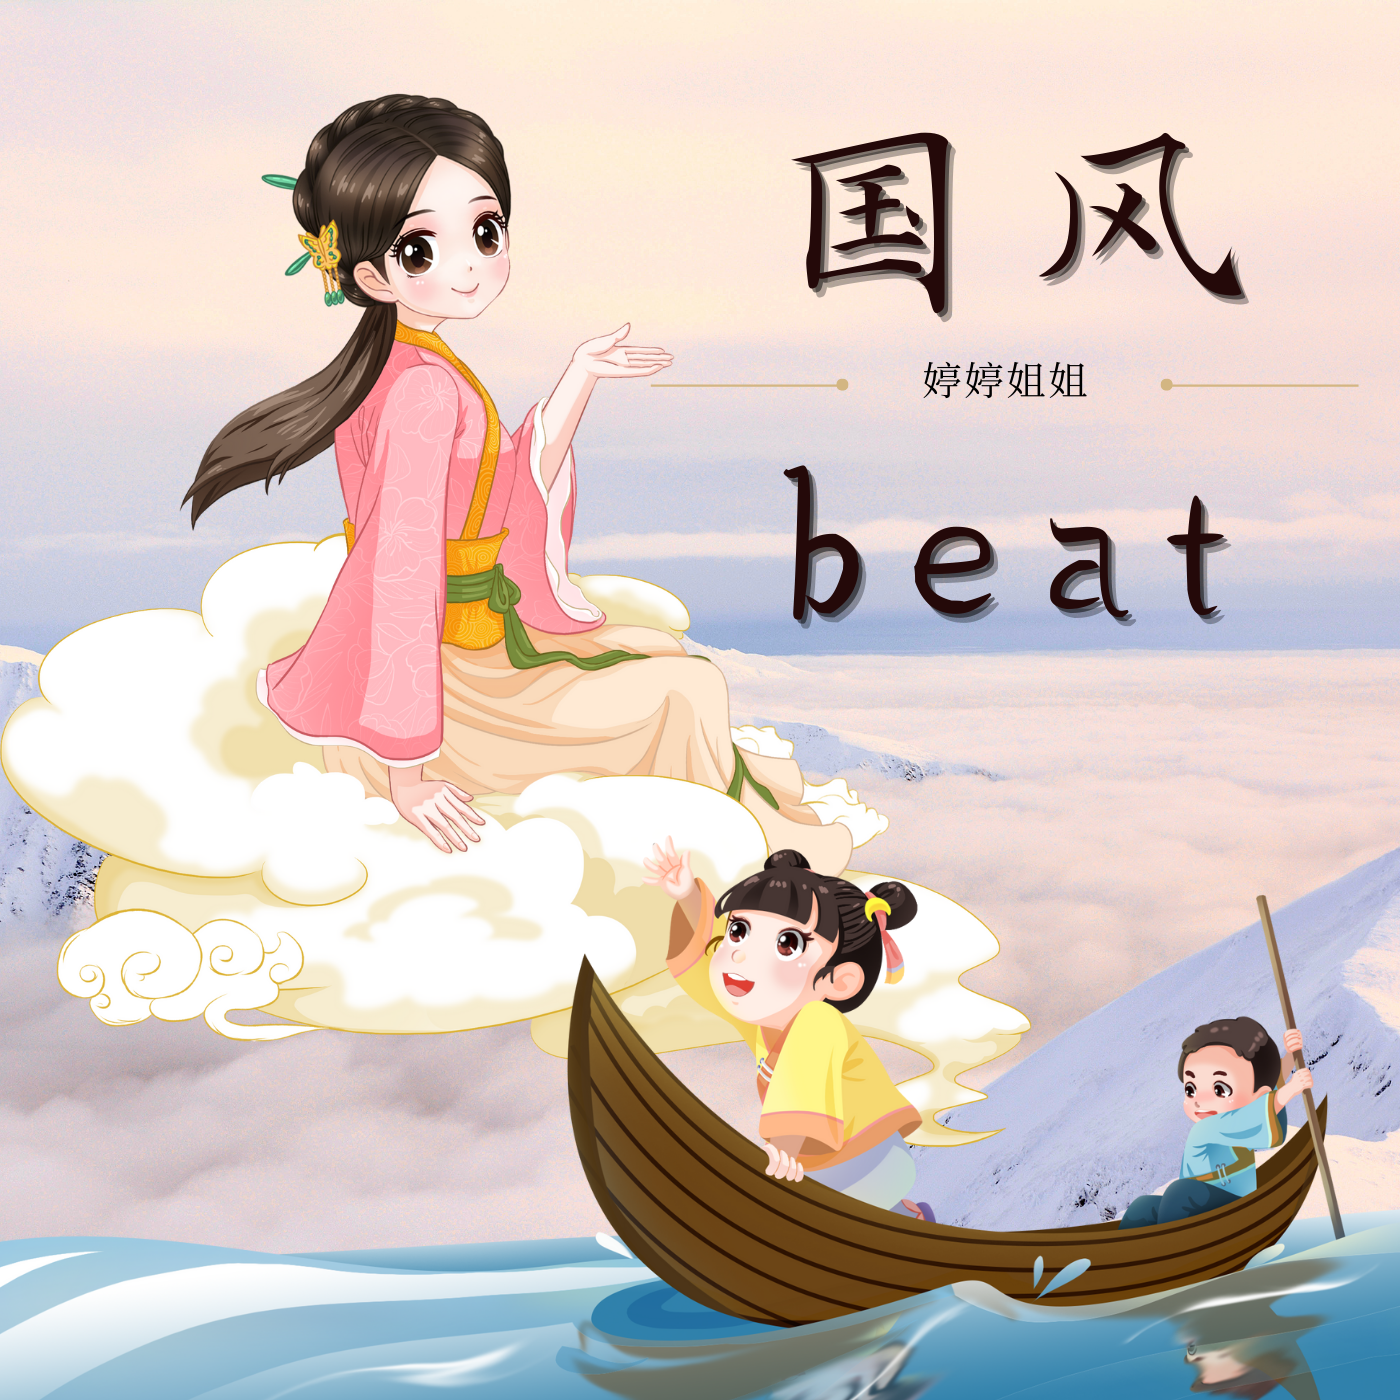 婷婷姐姐 - “墨梅”-中国风/Chinese type beat-BPM110